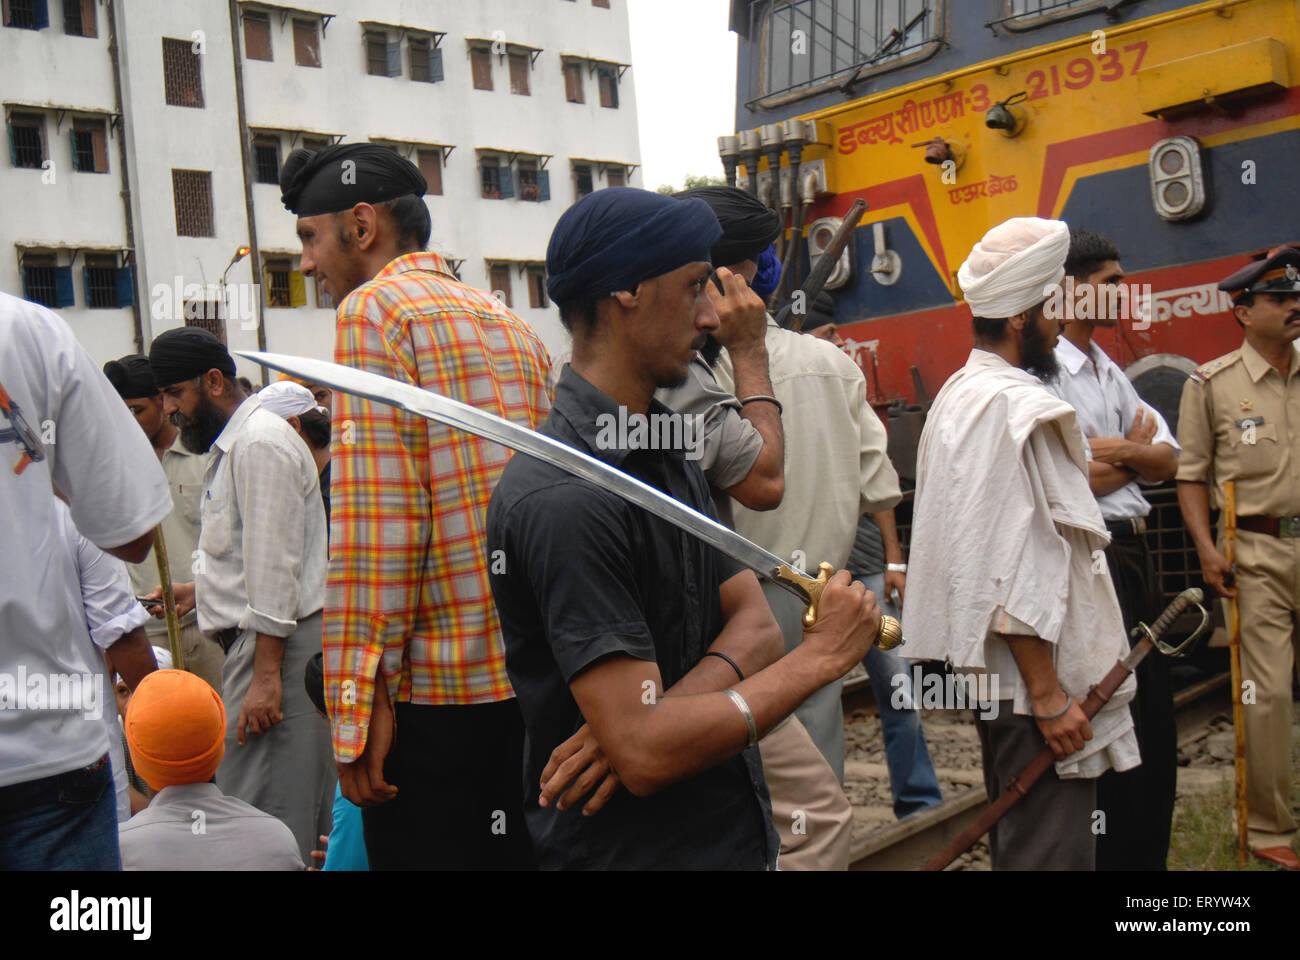 La communauté sikh trains bloc protester contre le feu du corps de dera saccha sauda chef ram rahim à Mulund Banque D'Images